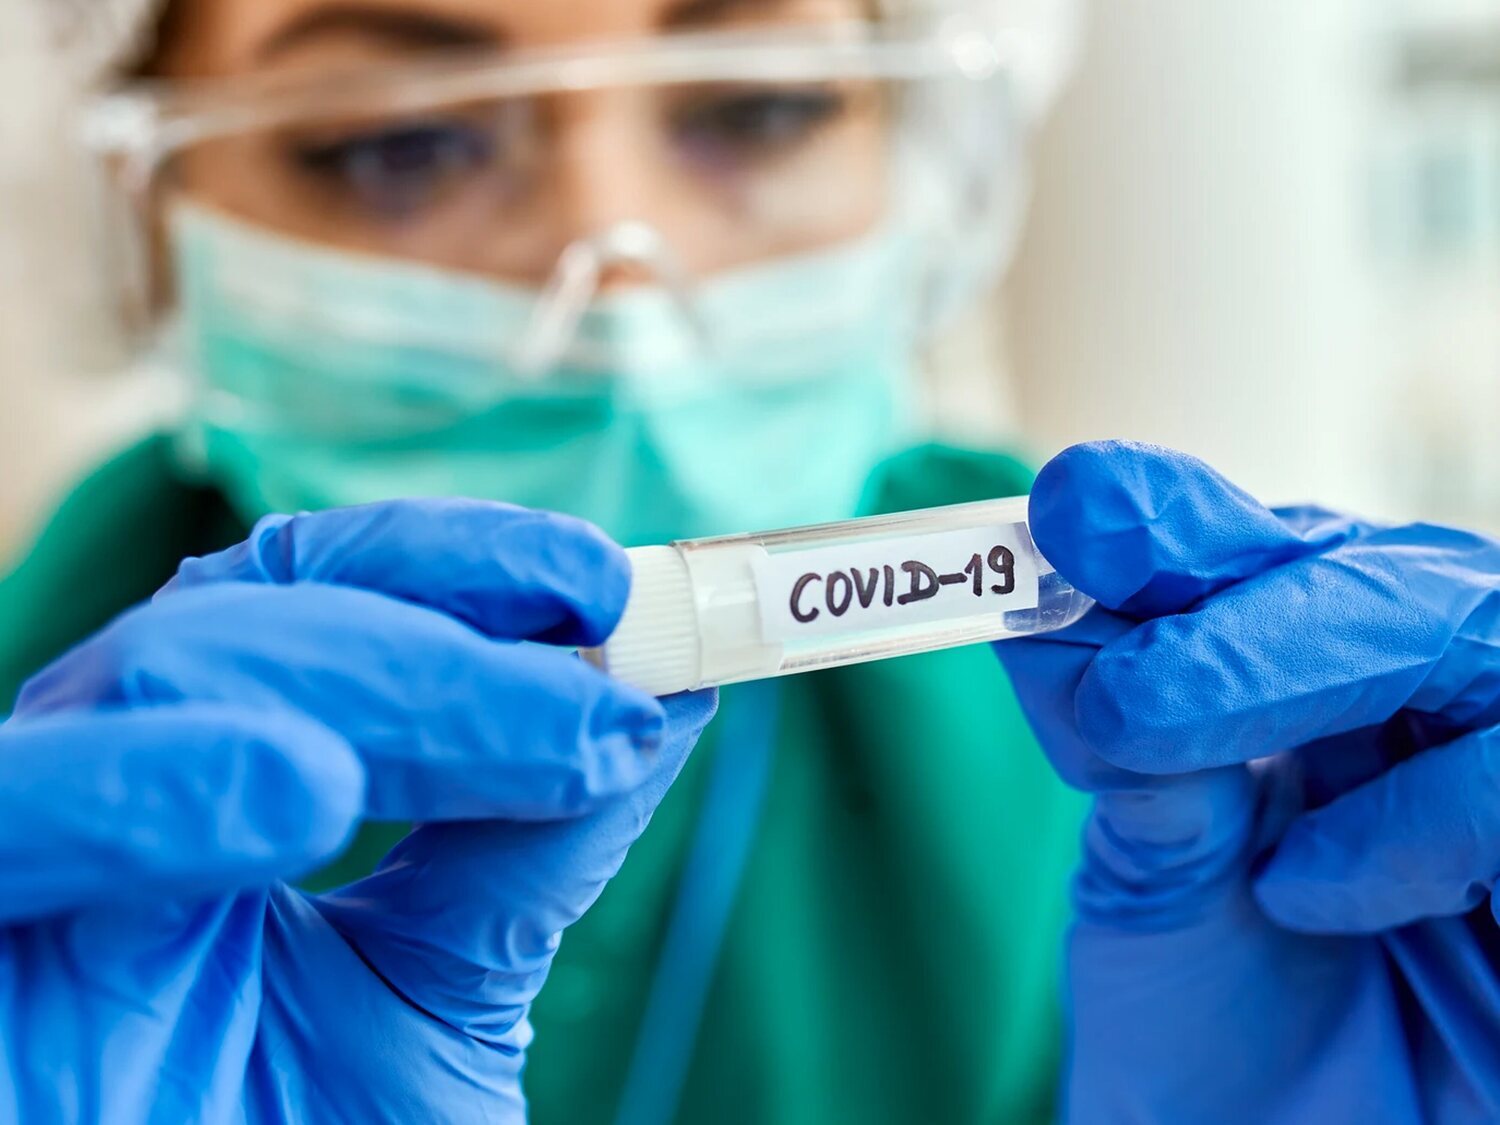 La infección por Covid-19 reduce el coeficiente intelectual del que la padece, según un estudio